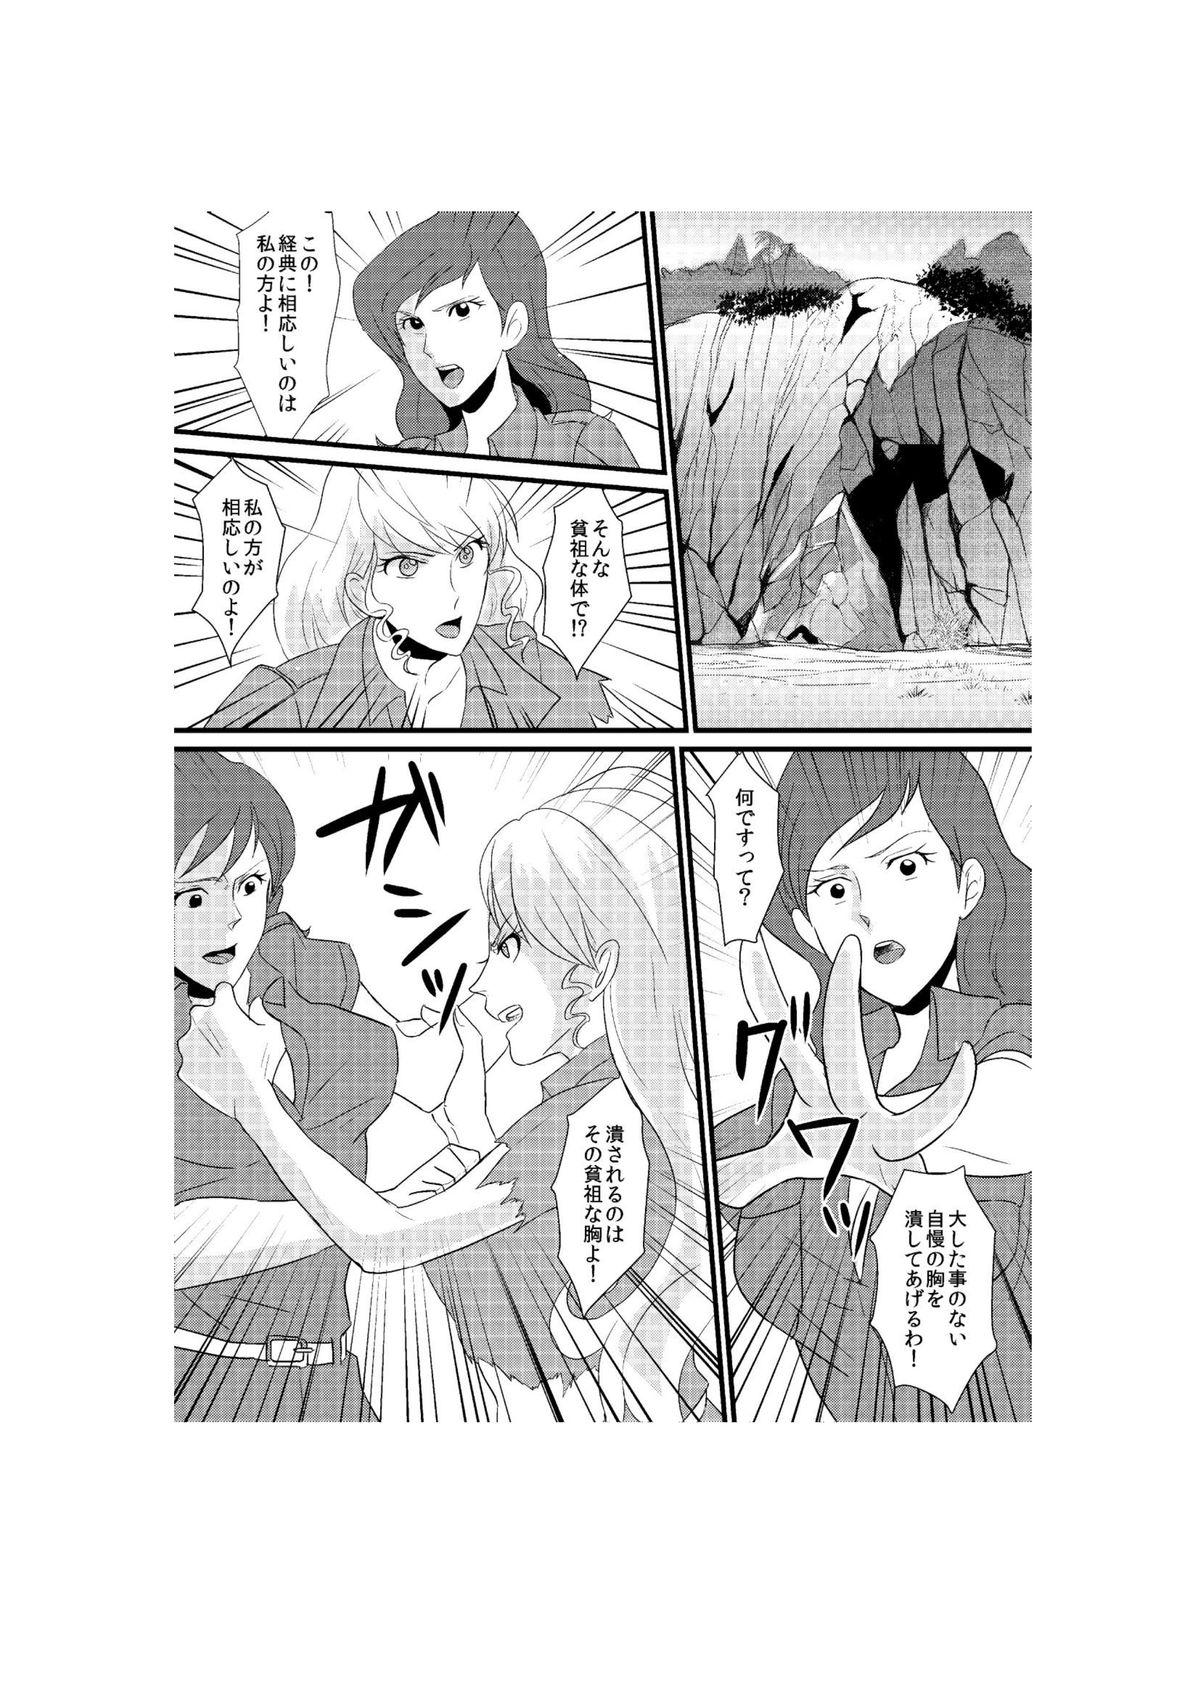 Storyline Fushi no Kyouten Ureta Onna no Tatakai - Fujiko VS Emmanuelle - Lupin iii Hermosa - Picture 1